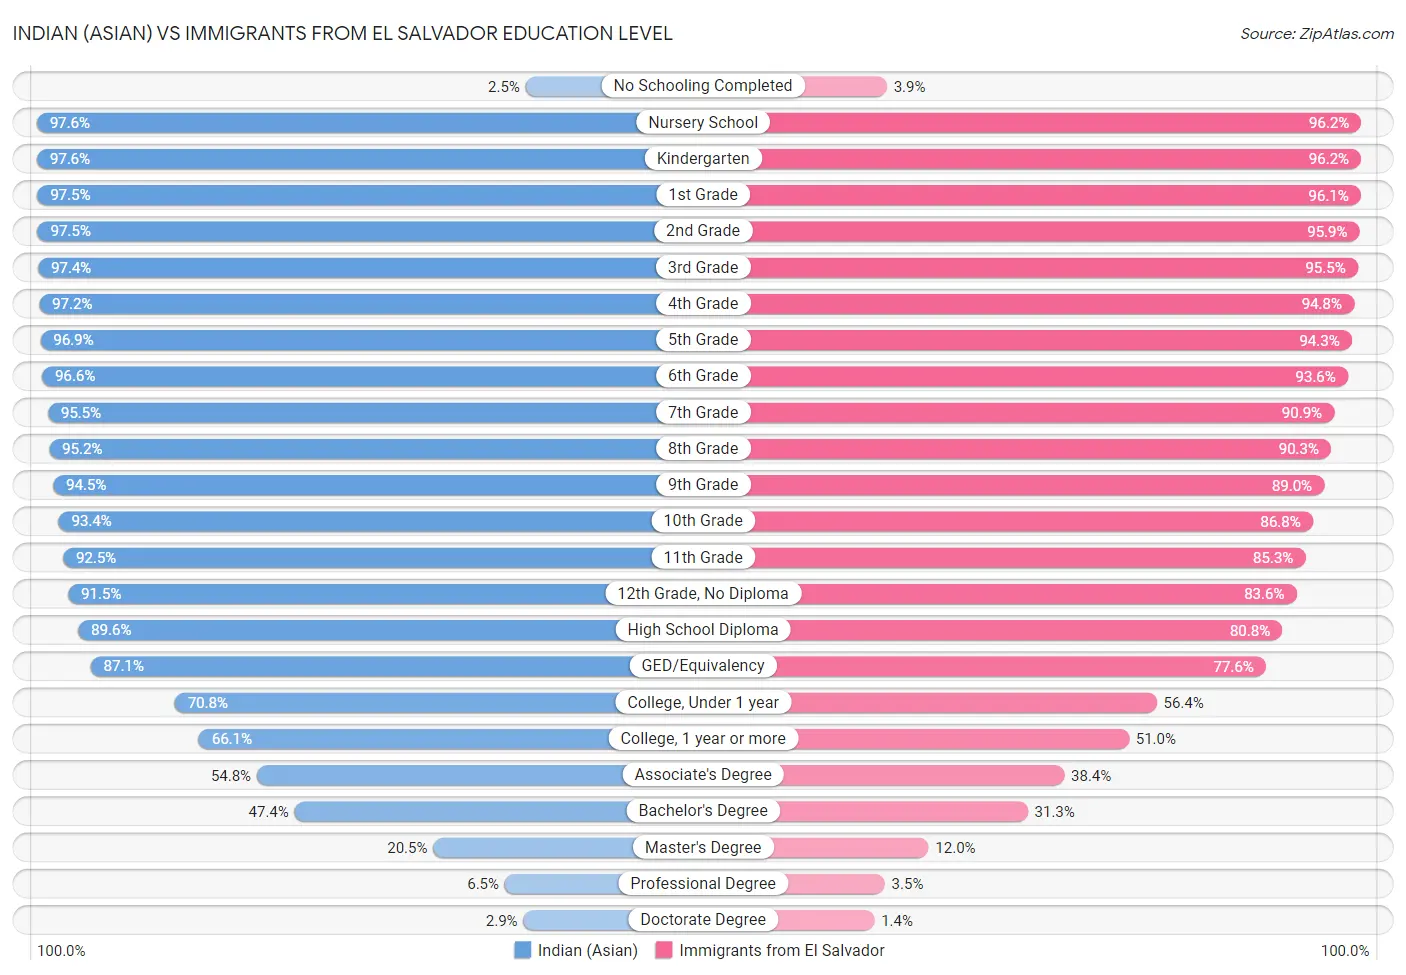 Indian (Asian) vs Immigrants from El Salvador Education Level